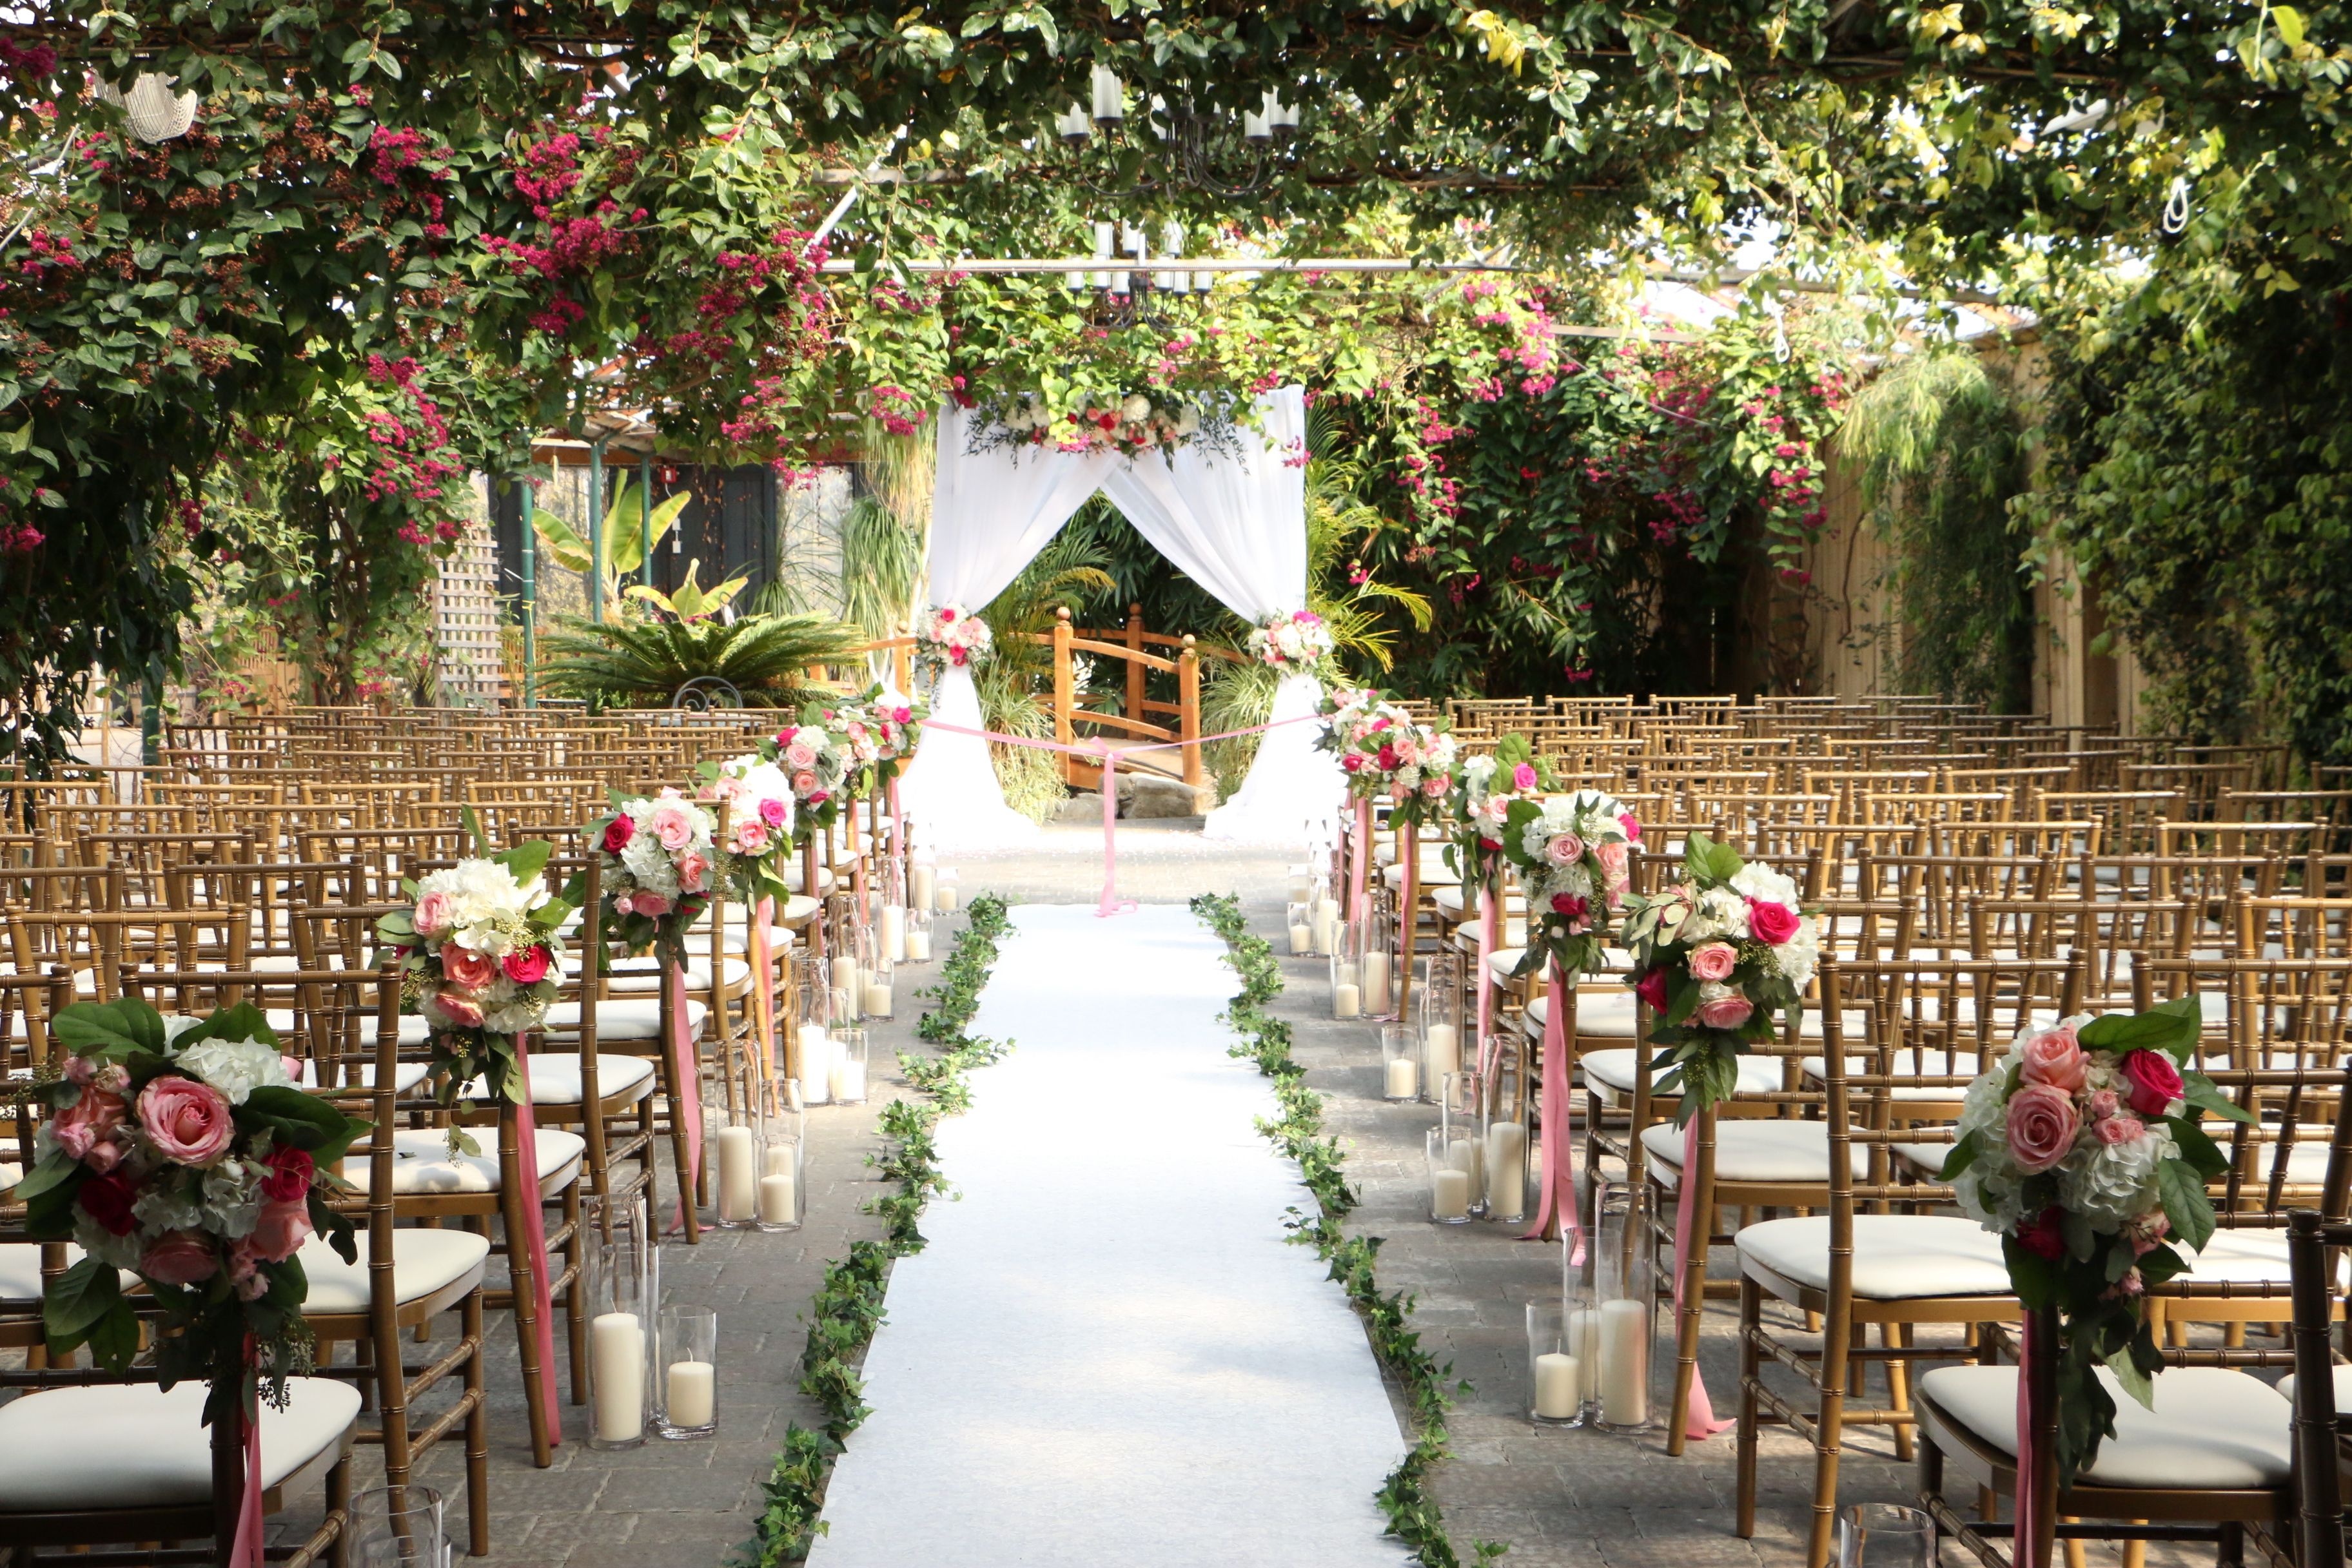 Una boda al aire libre | Fuente: Shutterstock